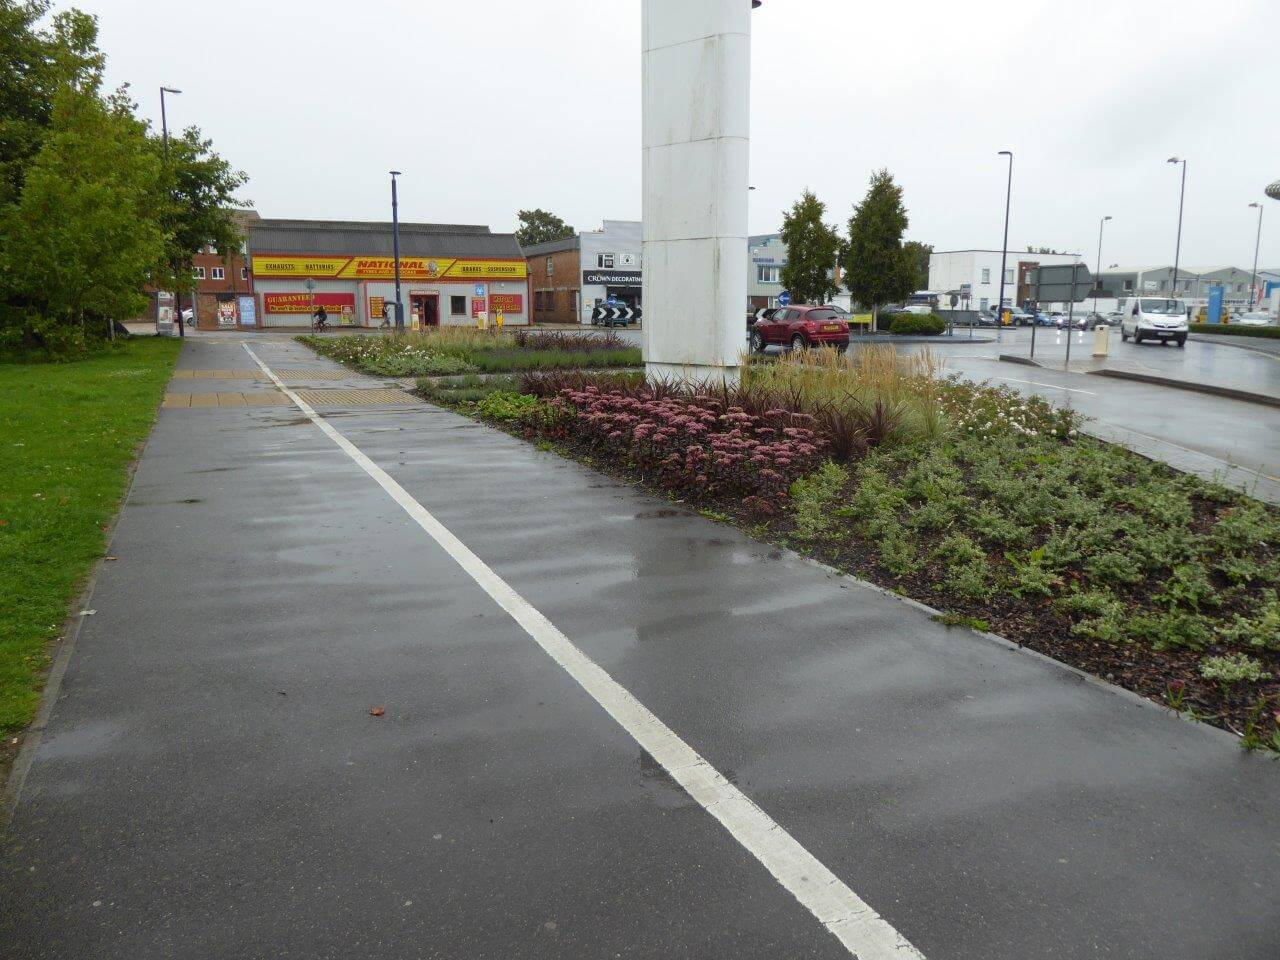 Portsmouth City Landscape Management